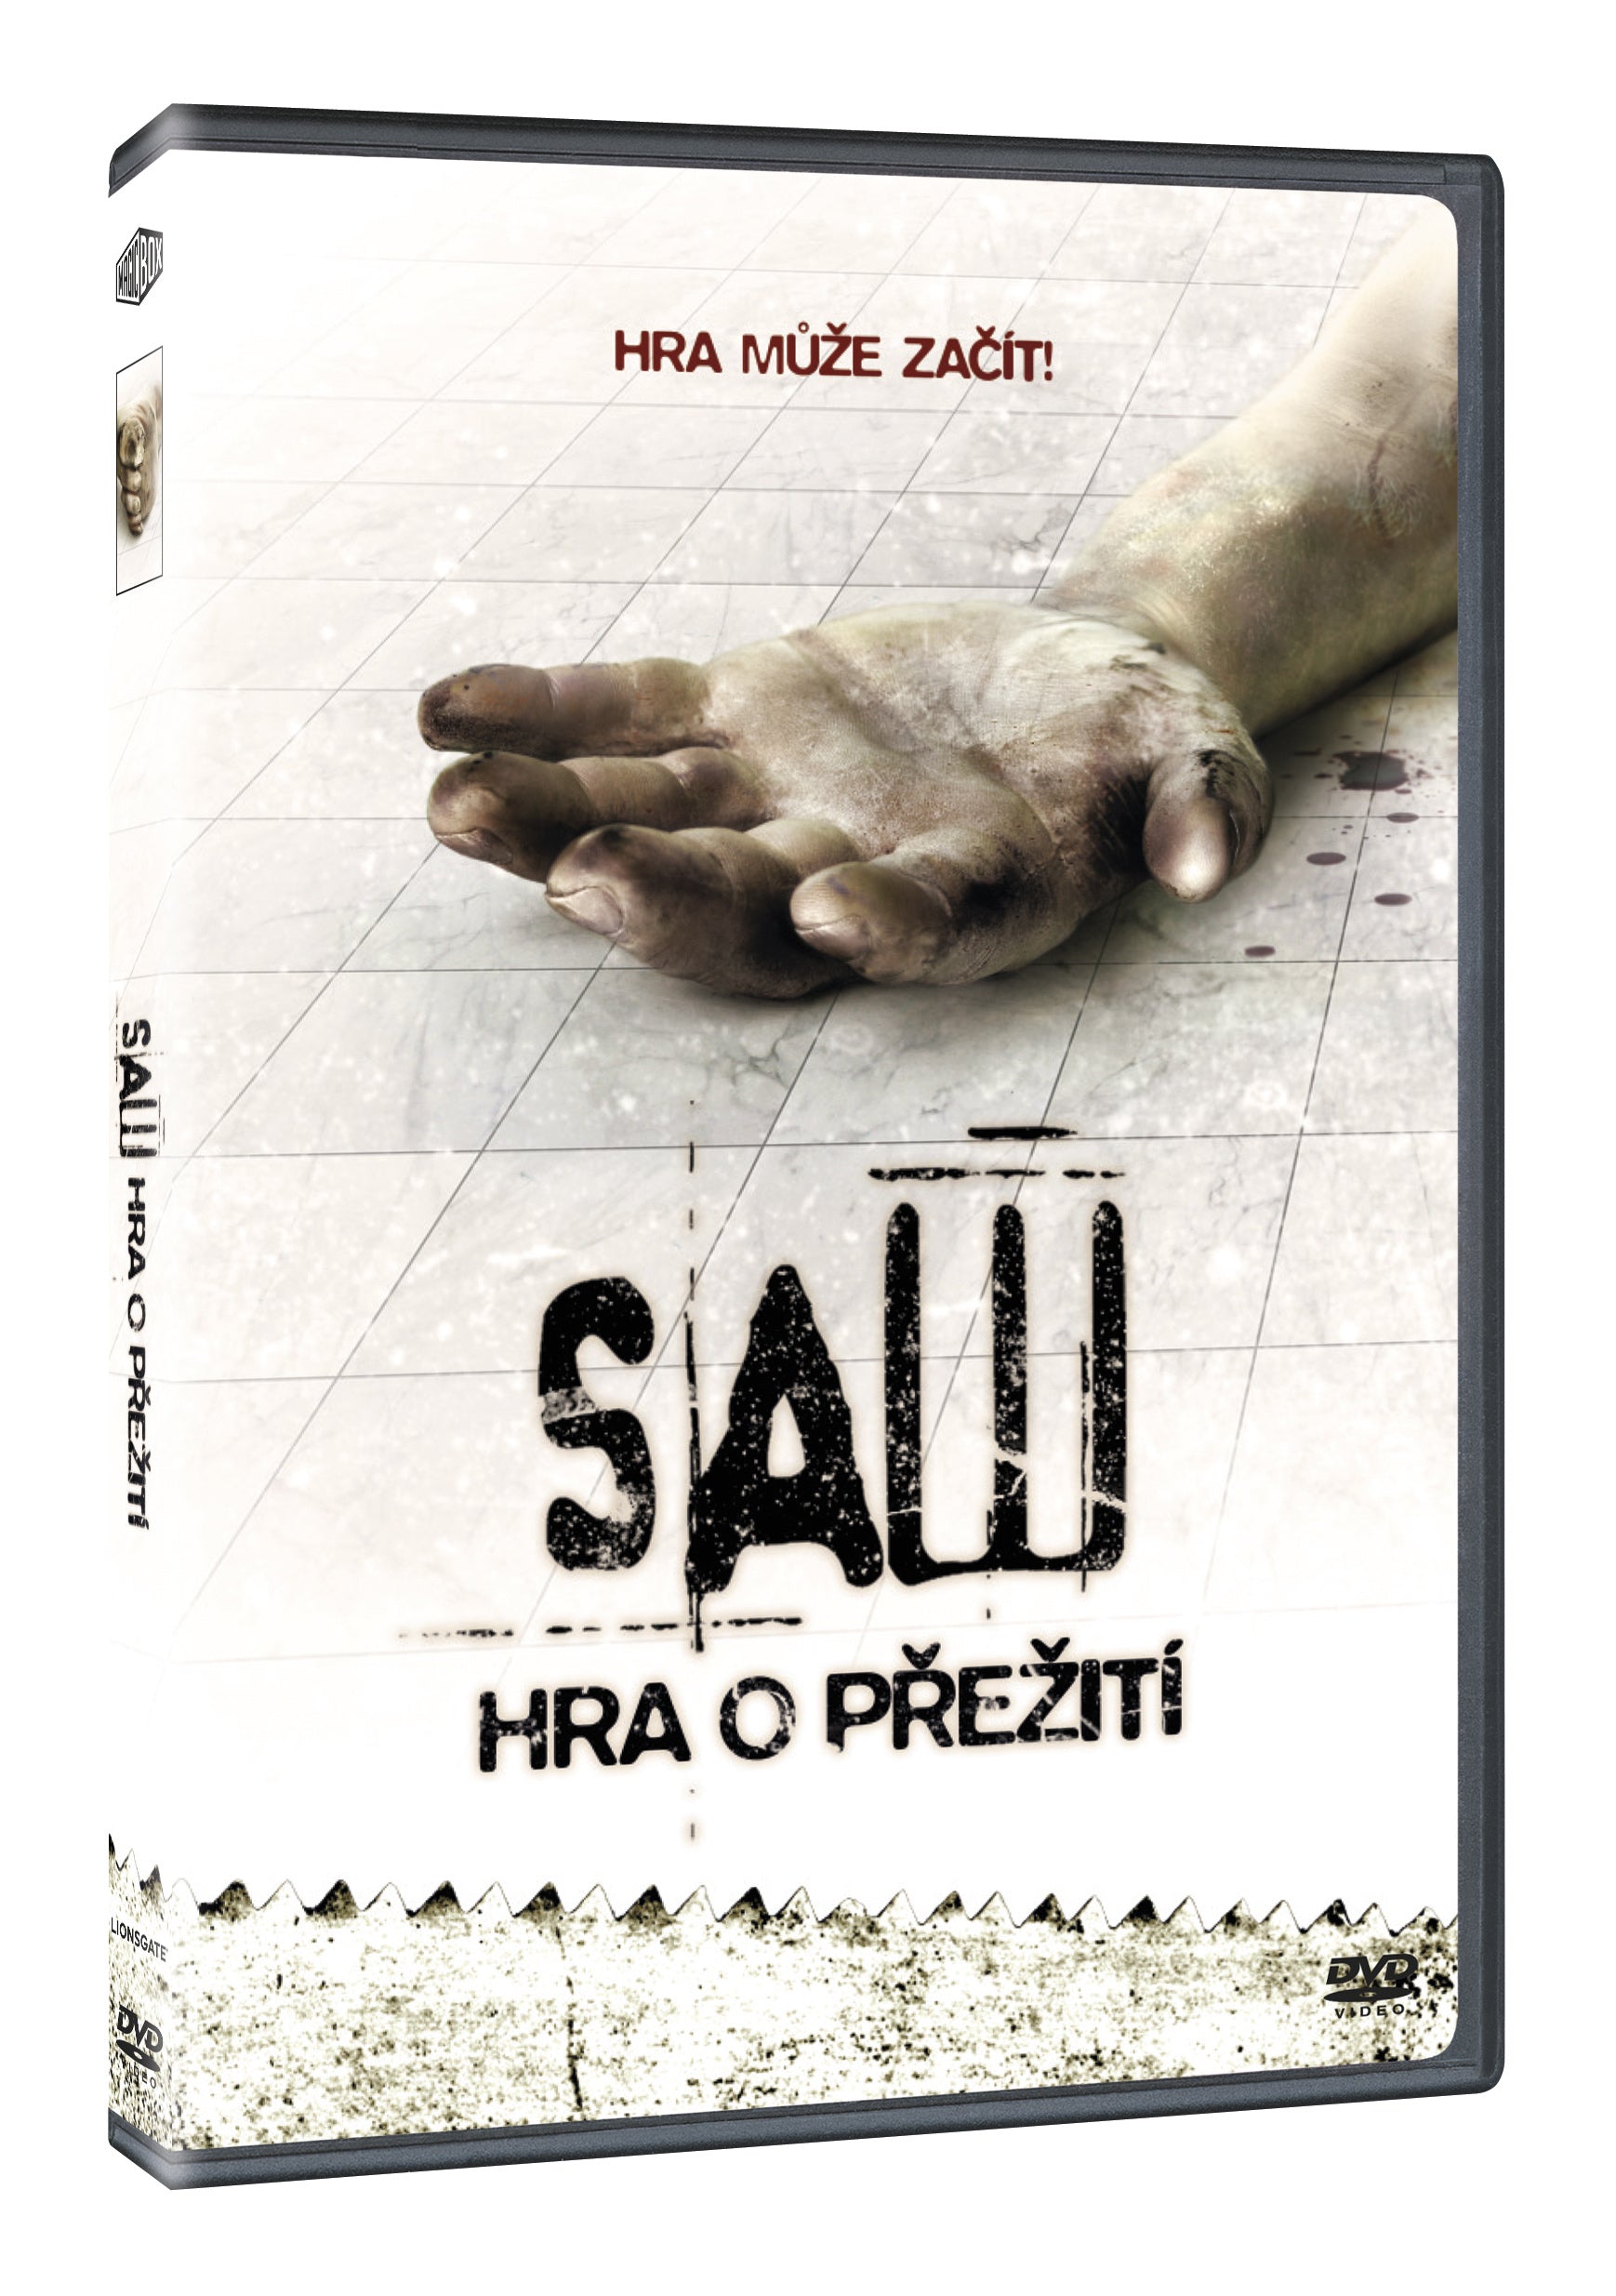 Saw: Hra o preziti DVD / Saw